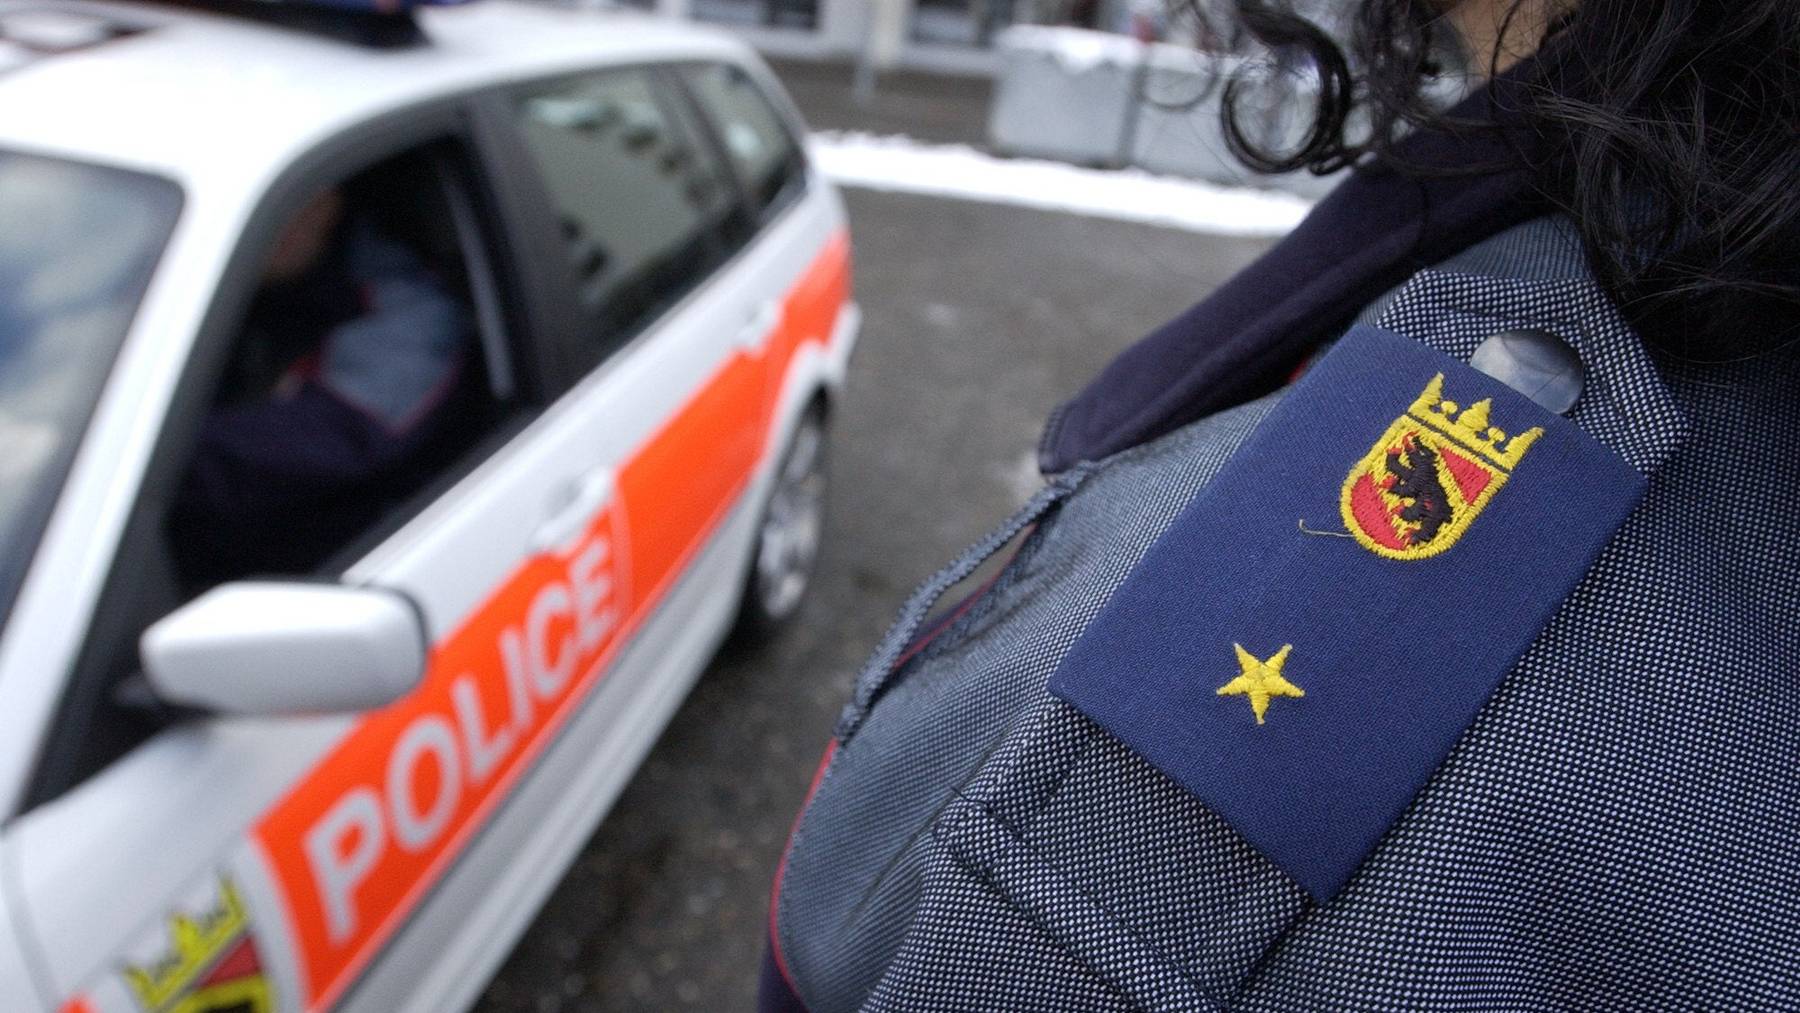 Die Kantonspolizei Bern musste am Montag zu einem Tatort ausrücken, an dem ein totes Ehepaar gefunden wurde. (Symbolbild)